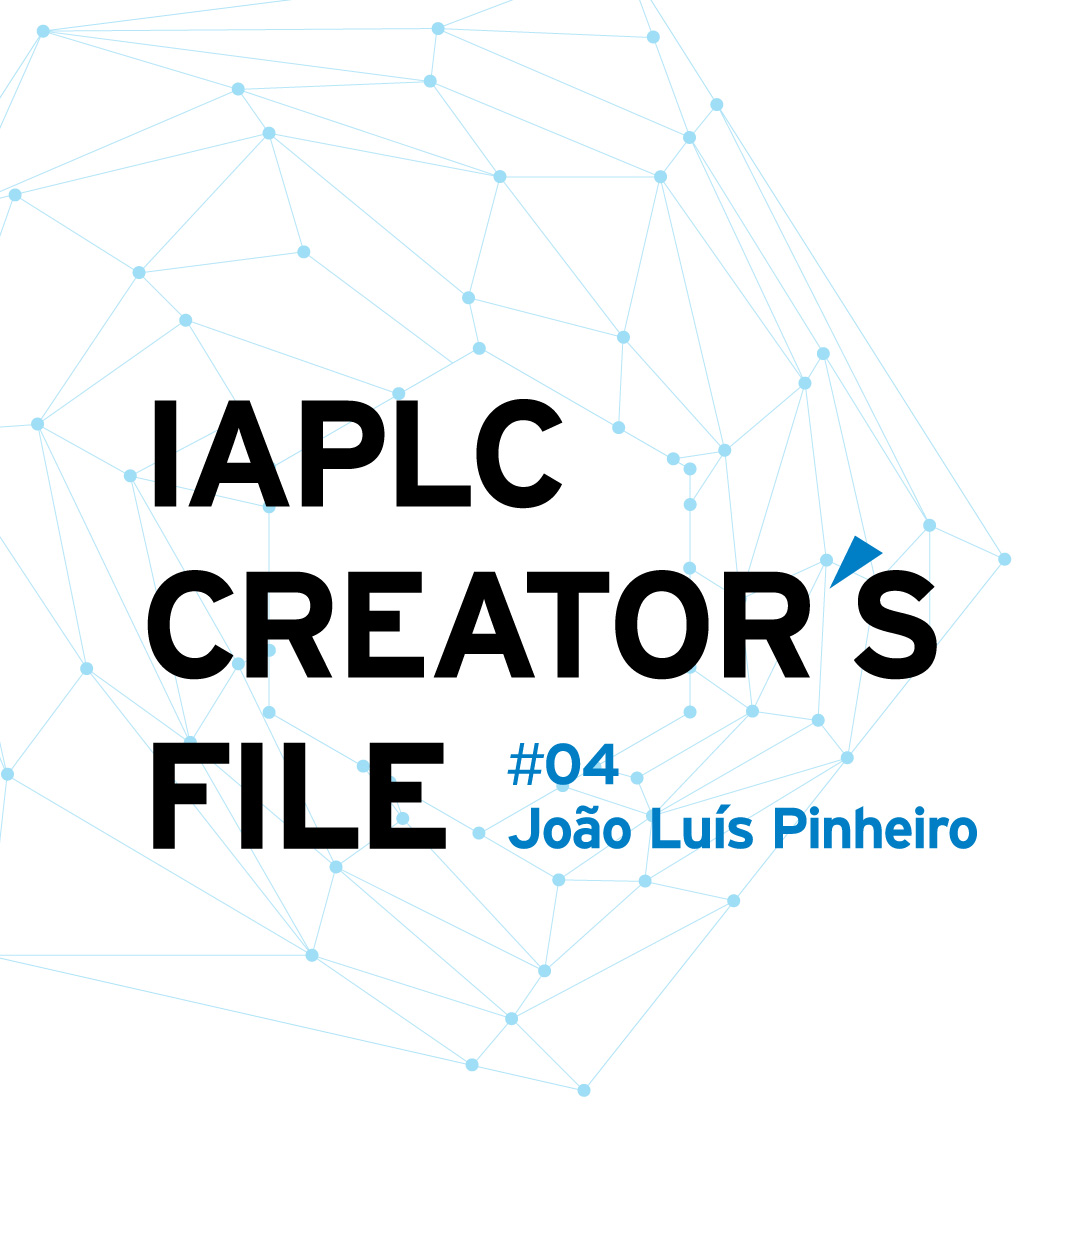 IAPLC CREATOR’S FILE #04 João Luís Pinheiro